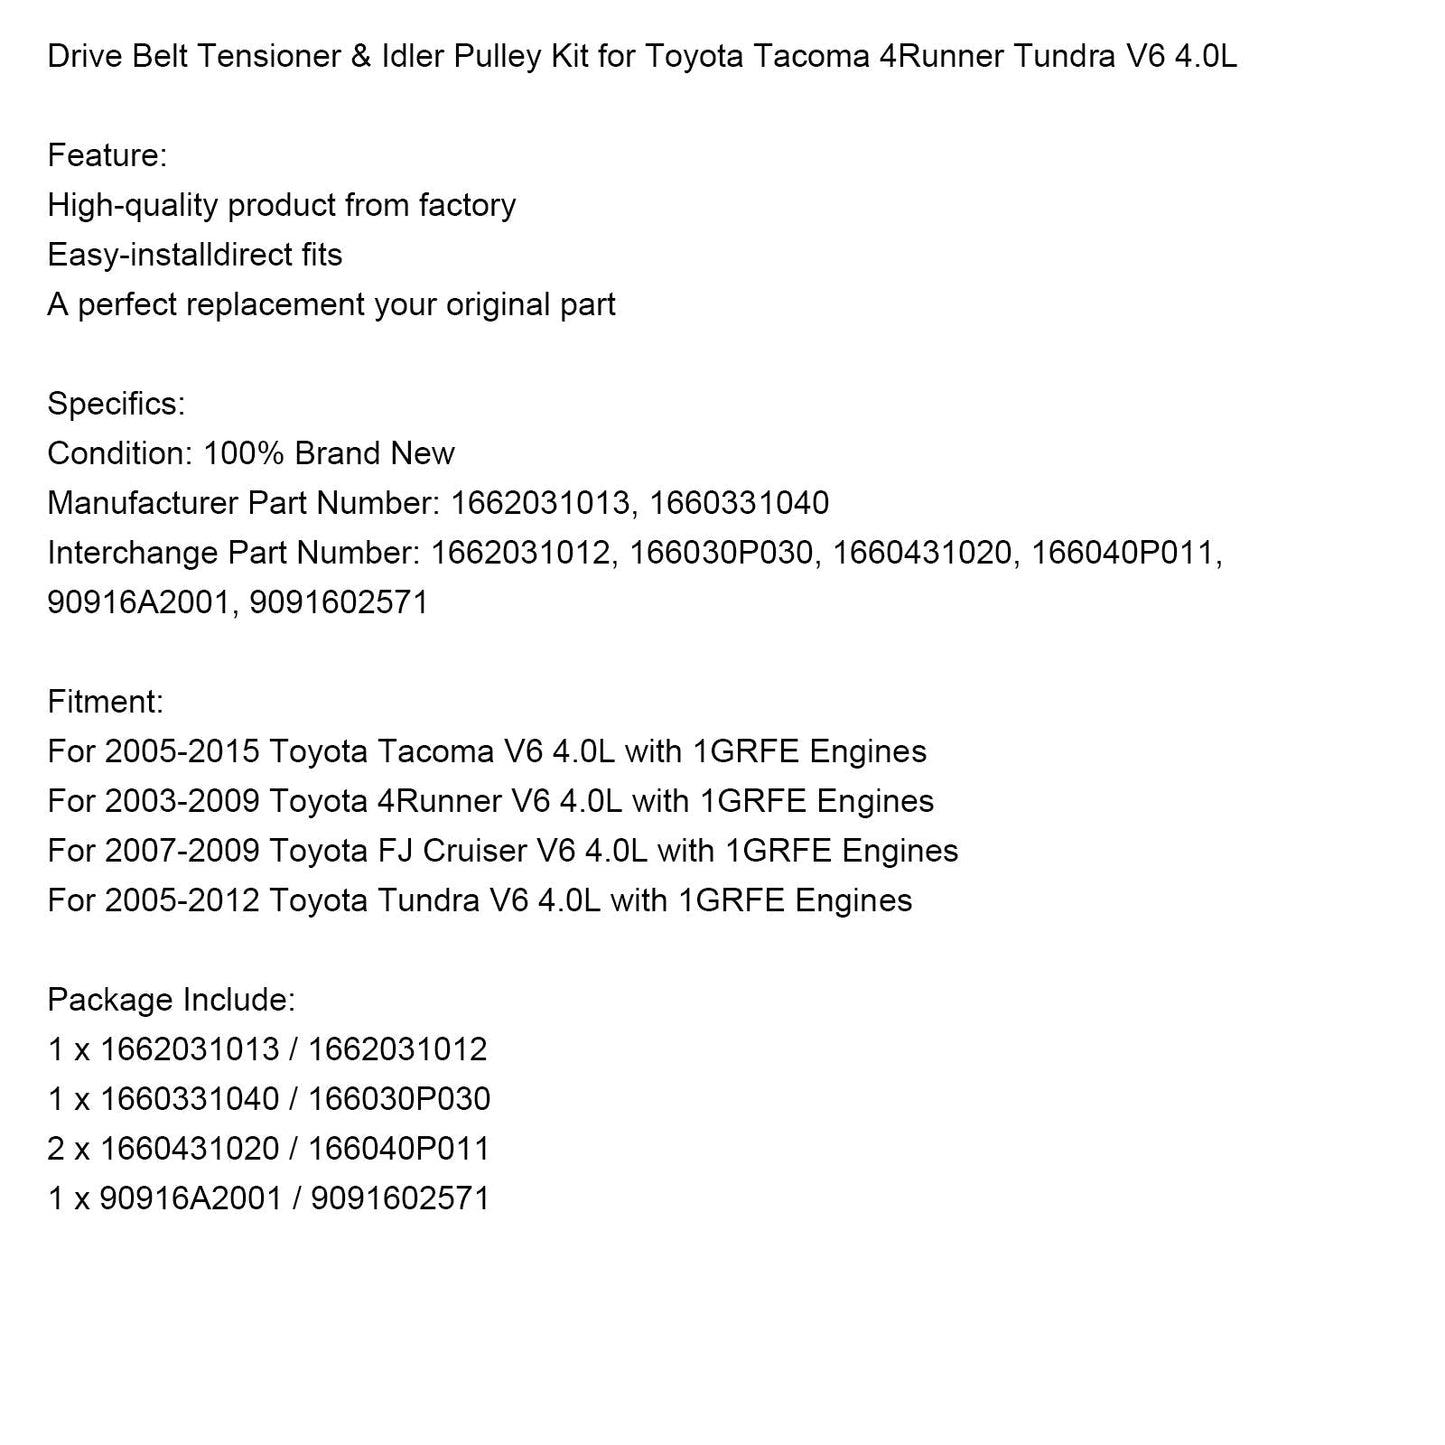 2003-2009 Toyota 4Runner V6 4.0L with 1GRFE Engines Drive Belt Tensioner & Idler Pulley Kit